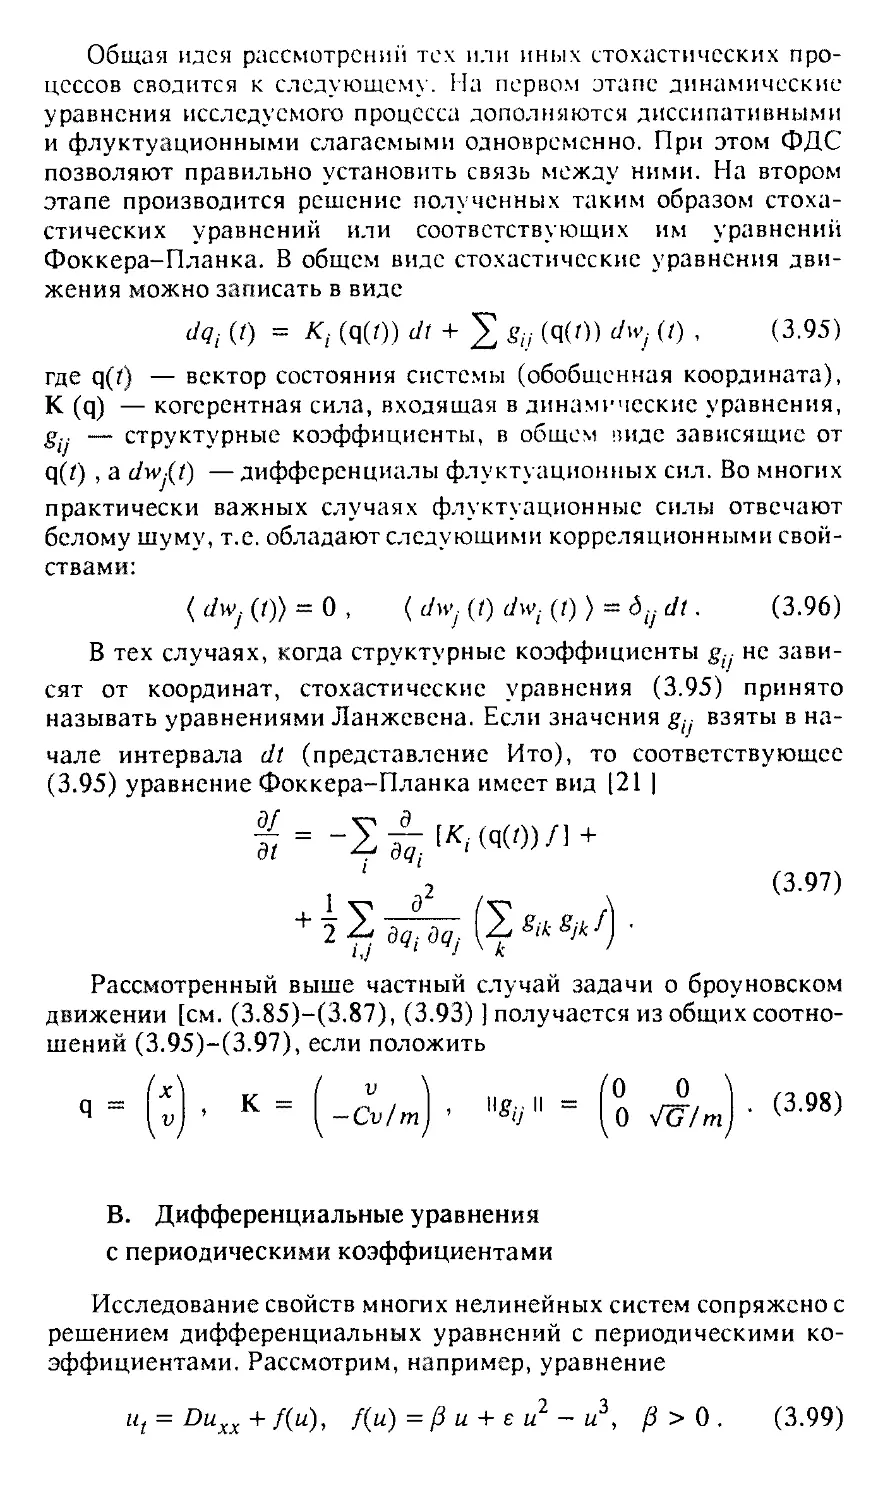 В. Дифференциальные уравнения с периодическими коэффициентами